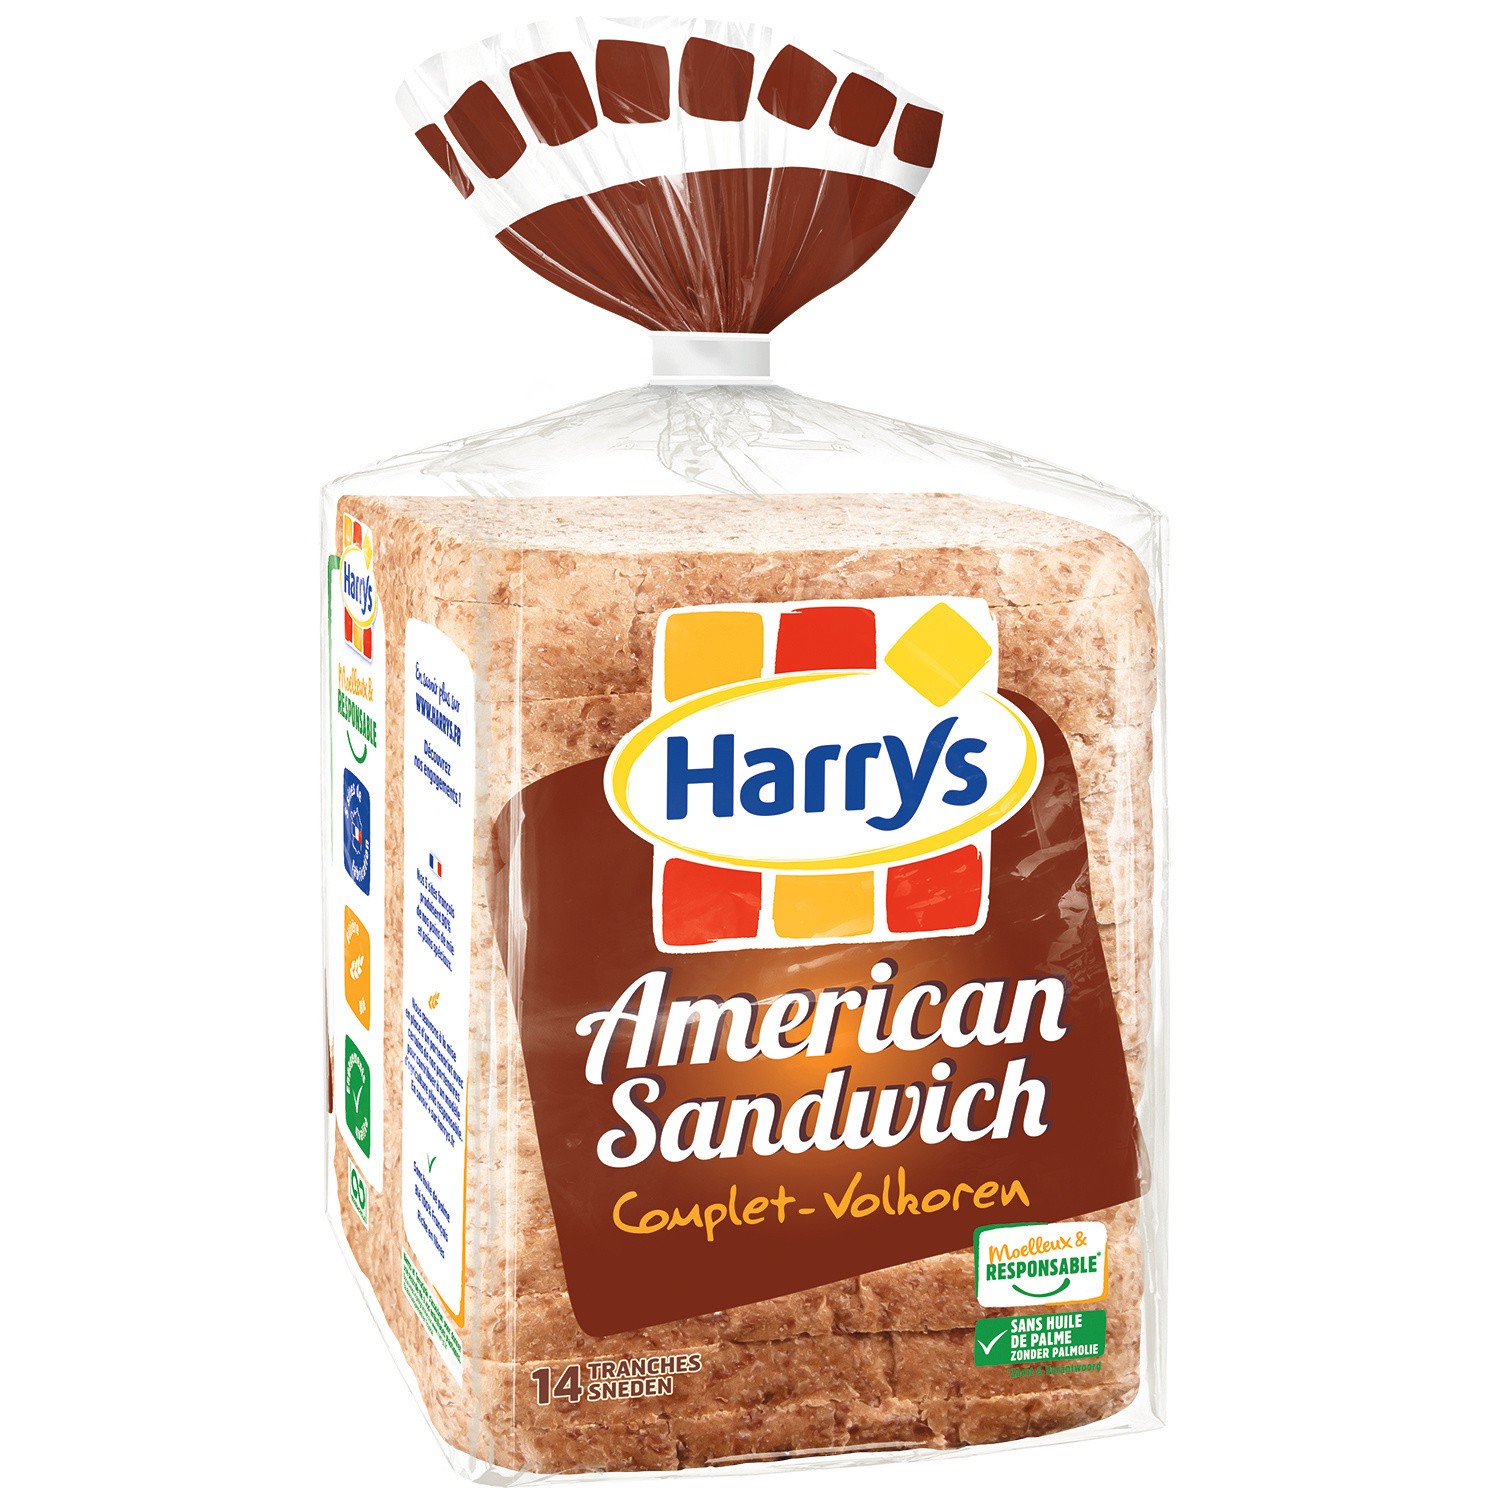 Wholegrain Bread American Sandwich Harry’s